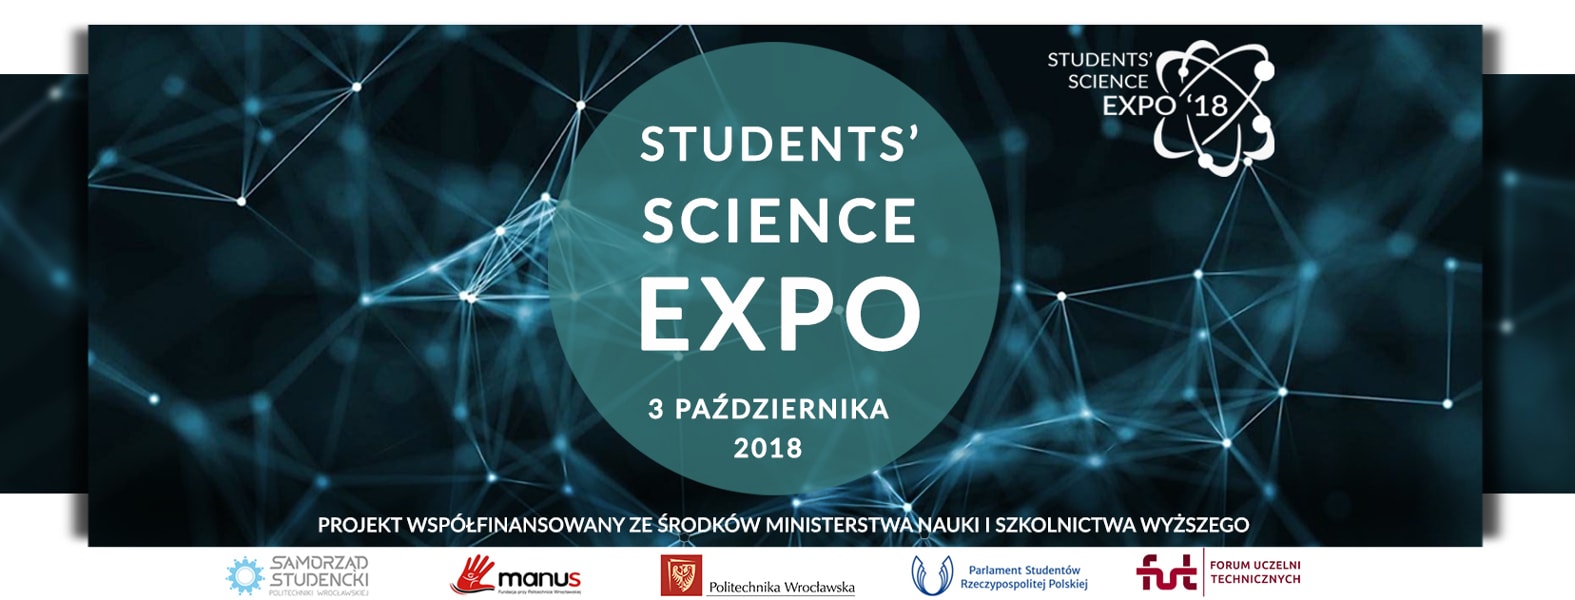 Targi Students’ Science Expo rozpoczną się 3 października 2019 roku. 